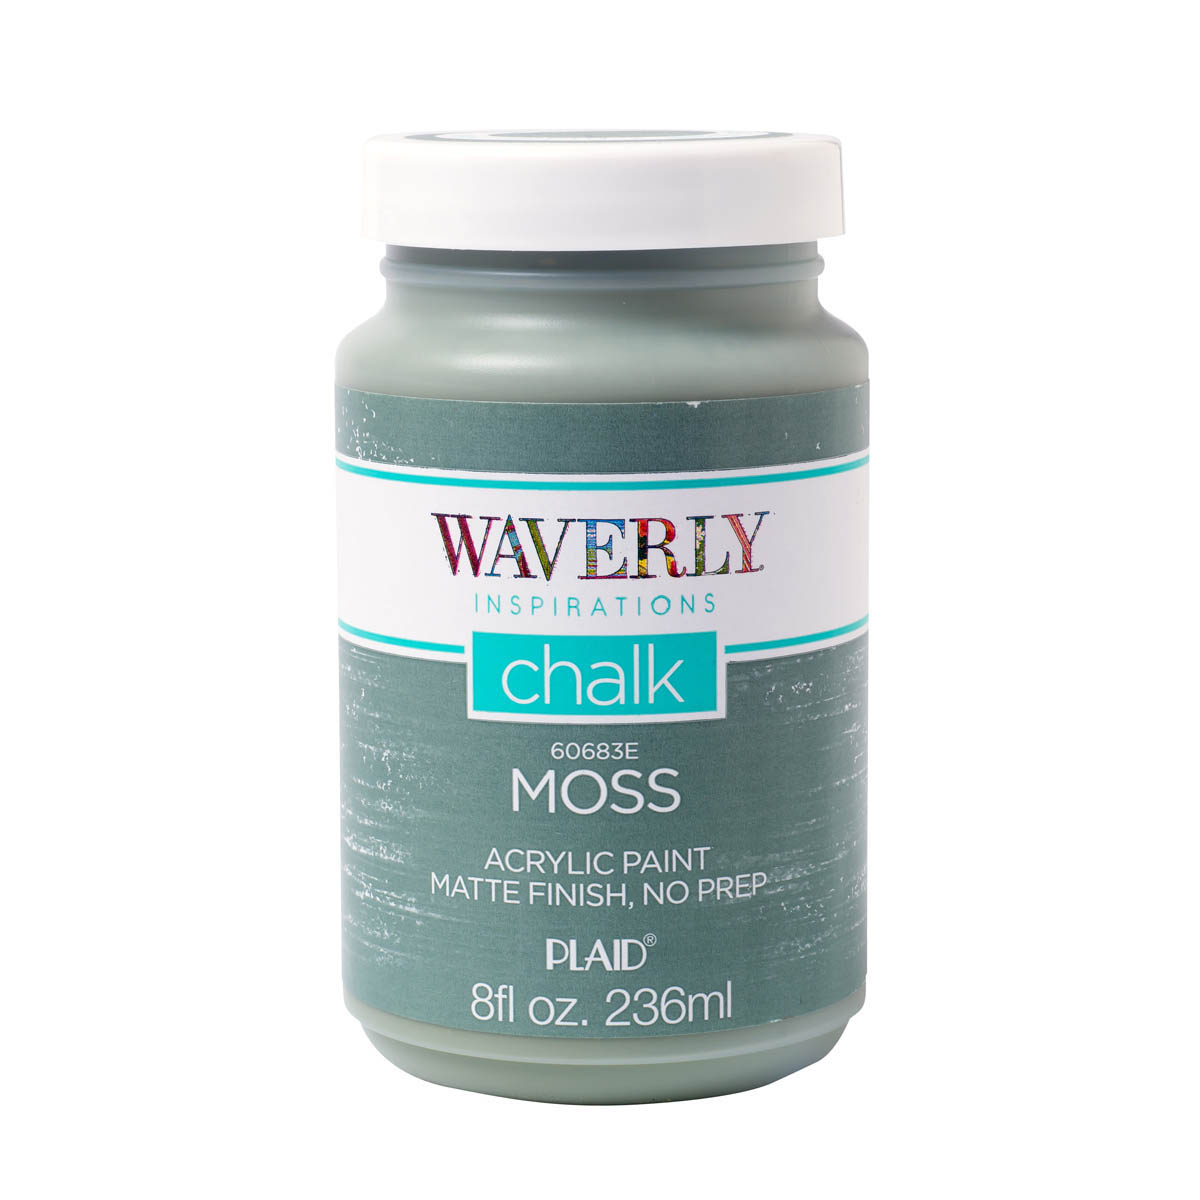 Waverly ® Inspirations Chalk Acrylic Paint - Moss, 8 oz. - 60683E